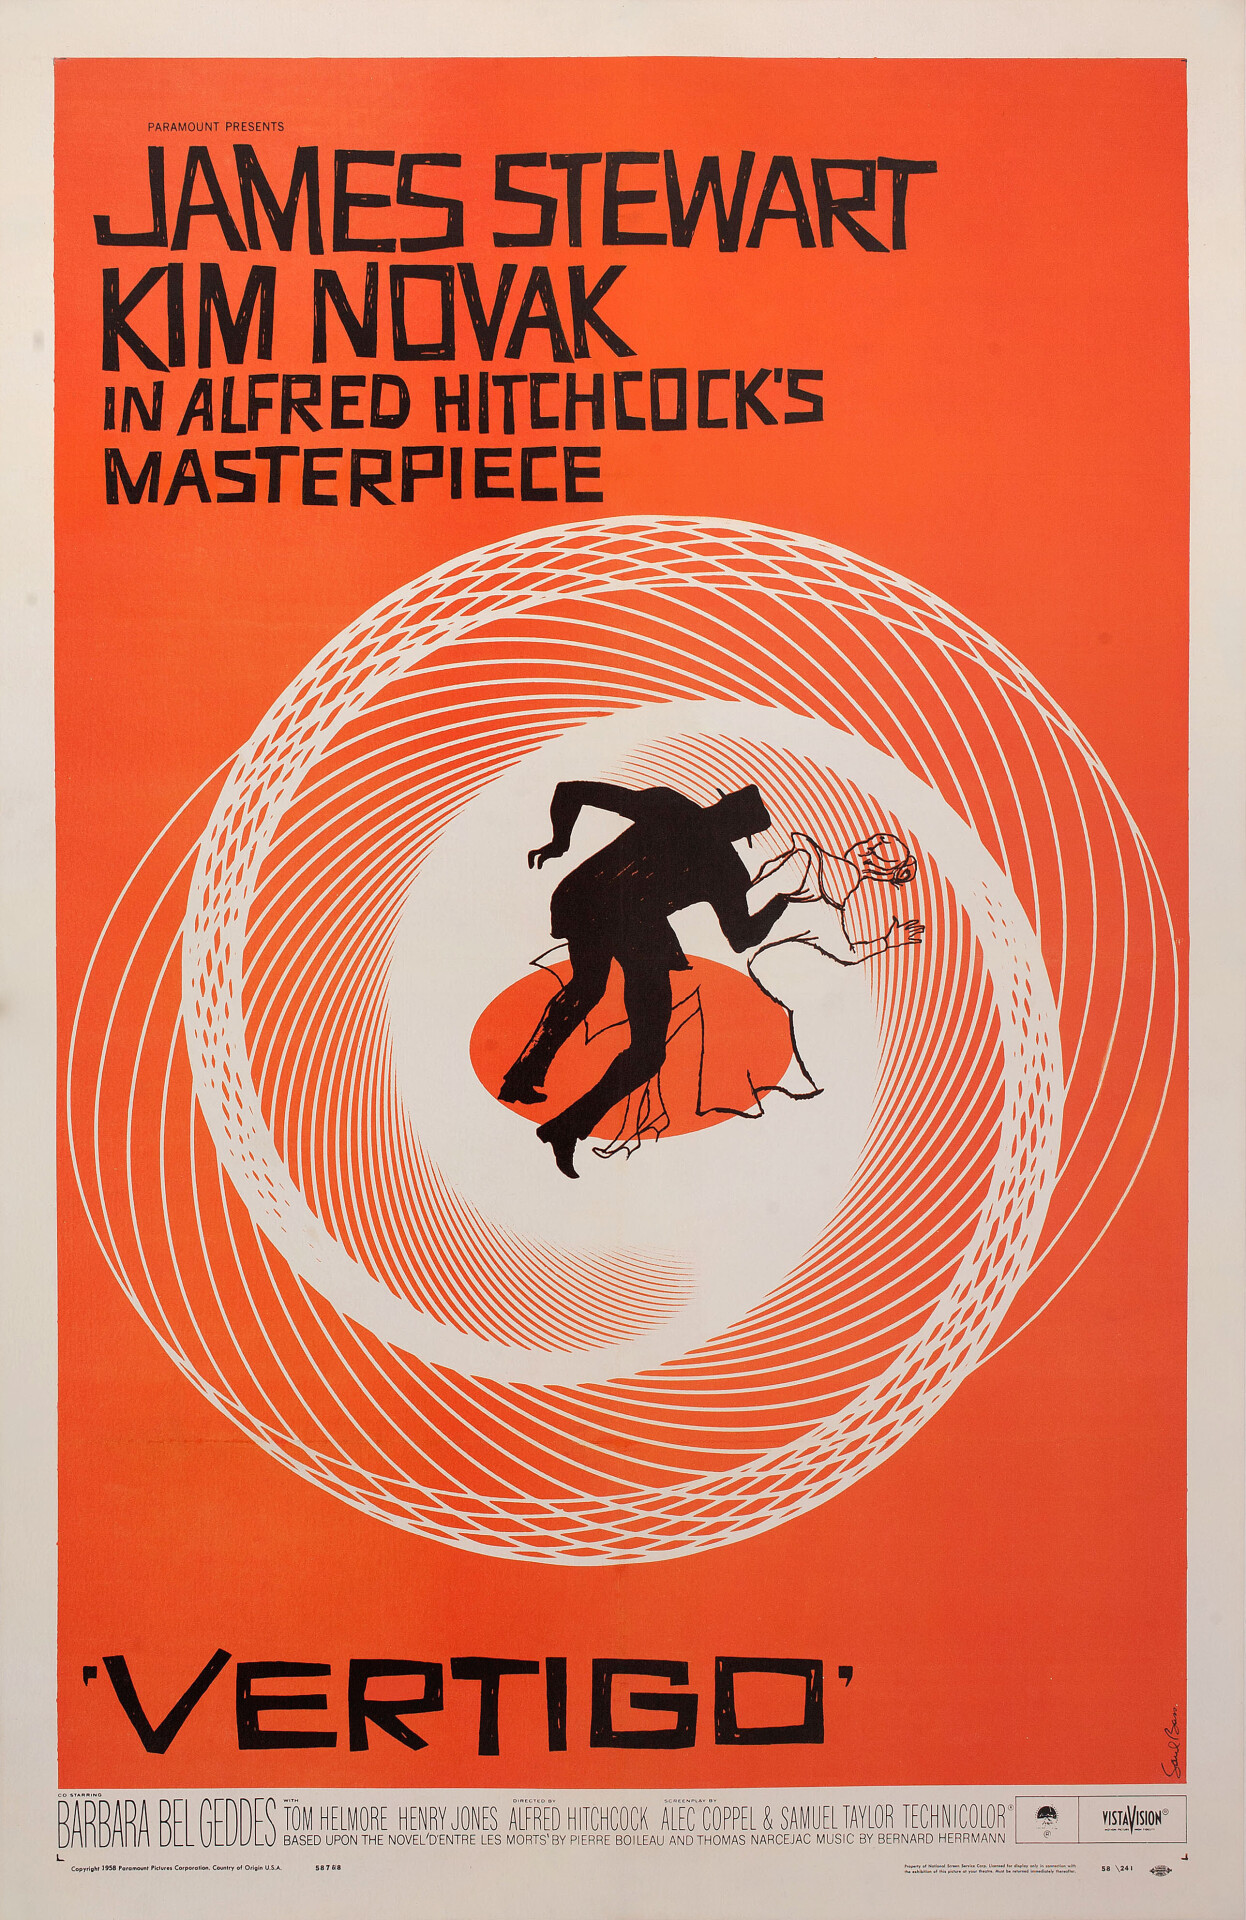 Головокружение (Vertigo, 1958), режиссёр Альфред Хичкок, американский постер к фильму, автор Сол Басс (графический дизайн, 1958 год)